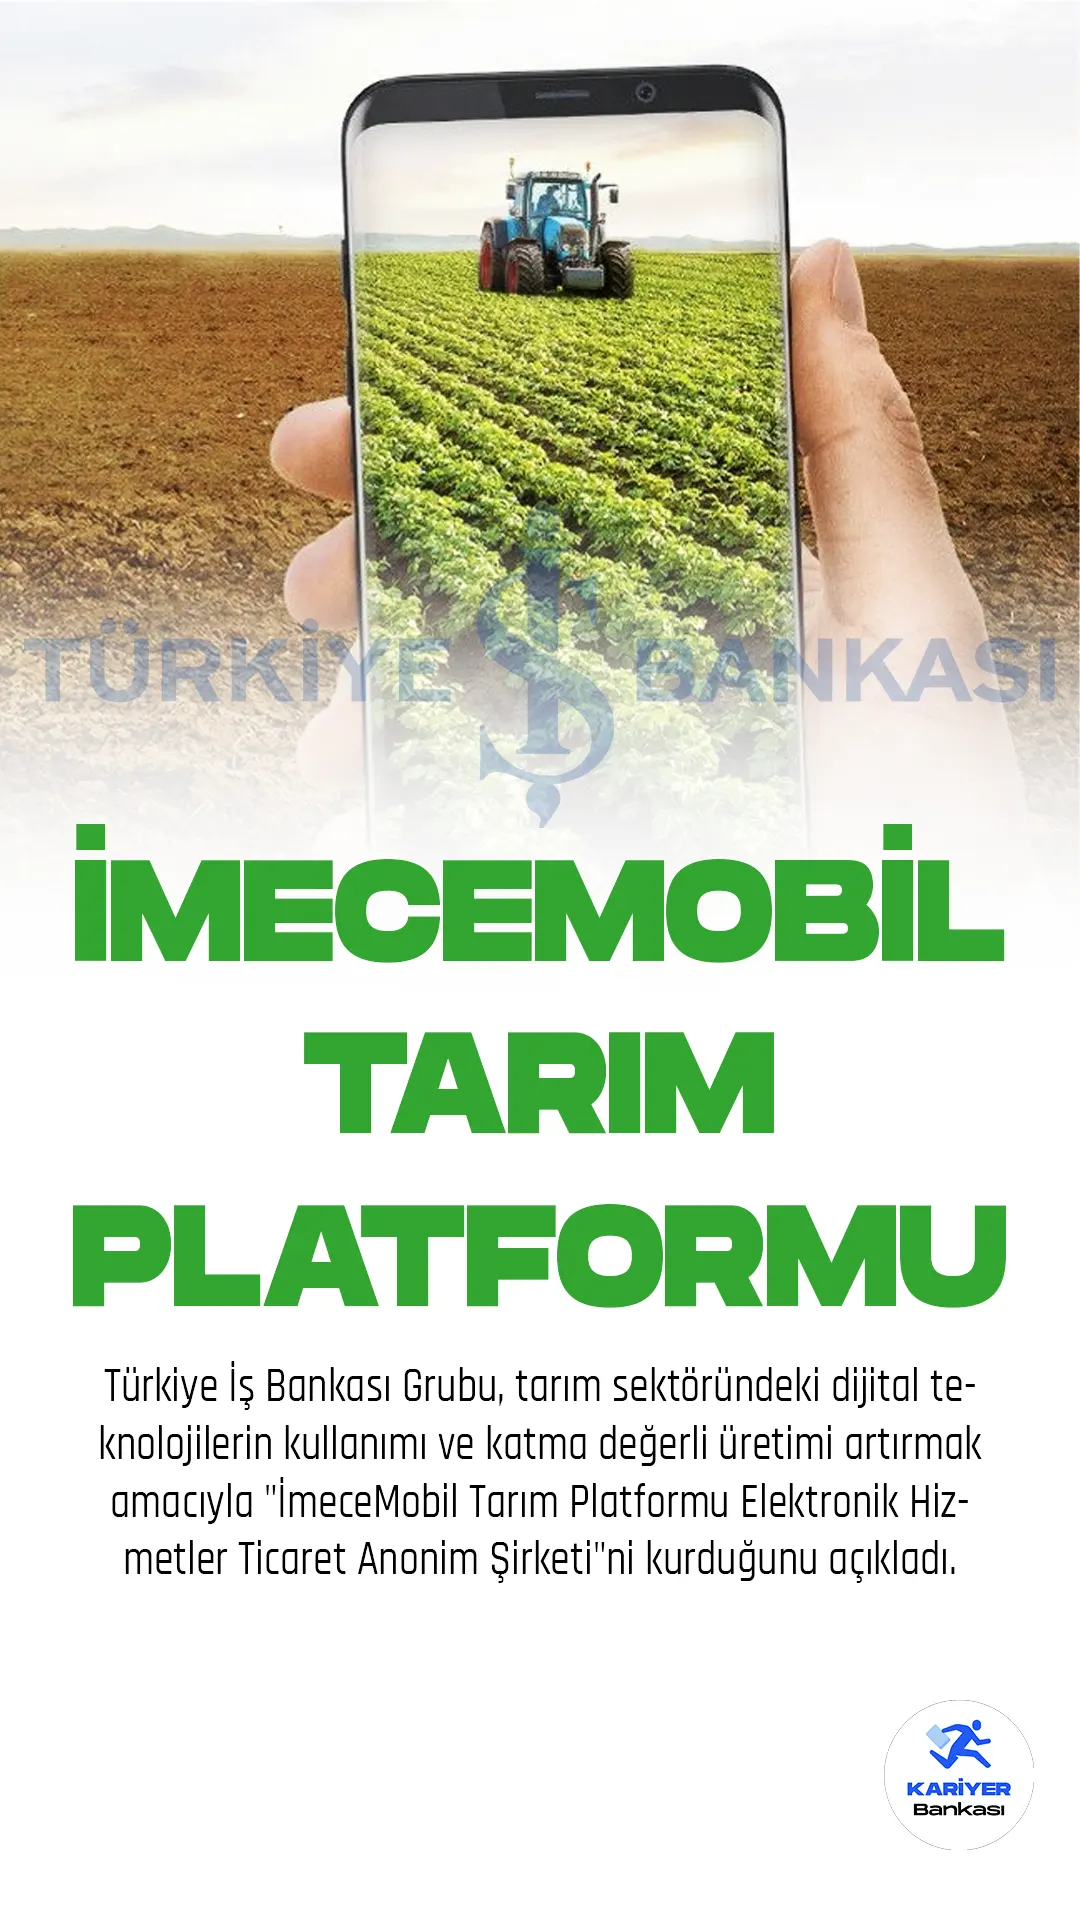 Türkiye İş Bankası Grubu, tarım sektöründeki dijital teknolojilerin kullanımı ve katma değerli üretimi artırmak amacıyla "İmeceMobil Tarım Platformu Elektronik Hizmetler Ticaret Anonim Şirketi"ni kurduğunu açıkladı.